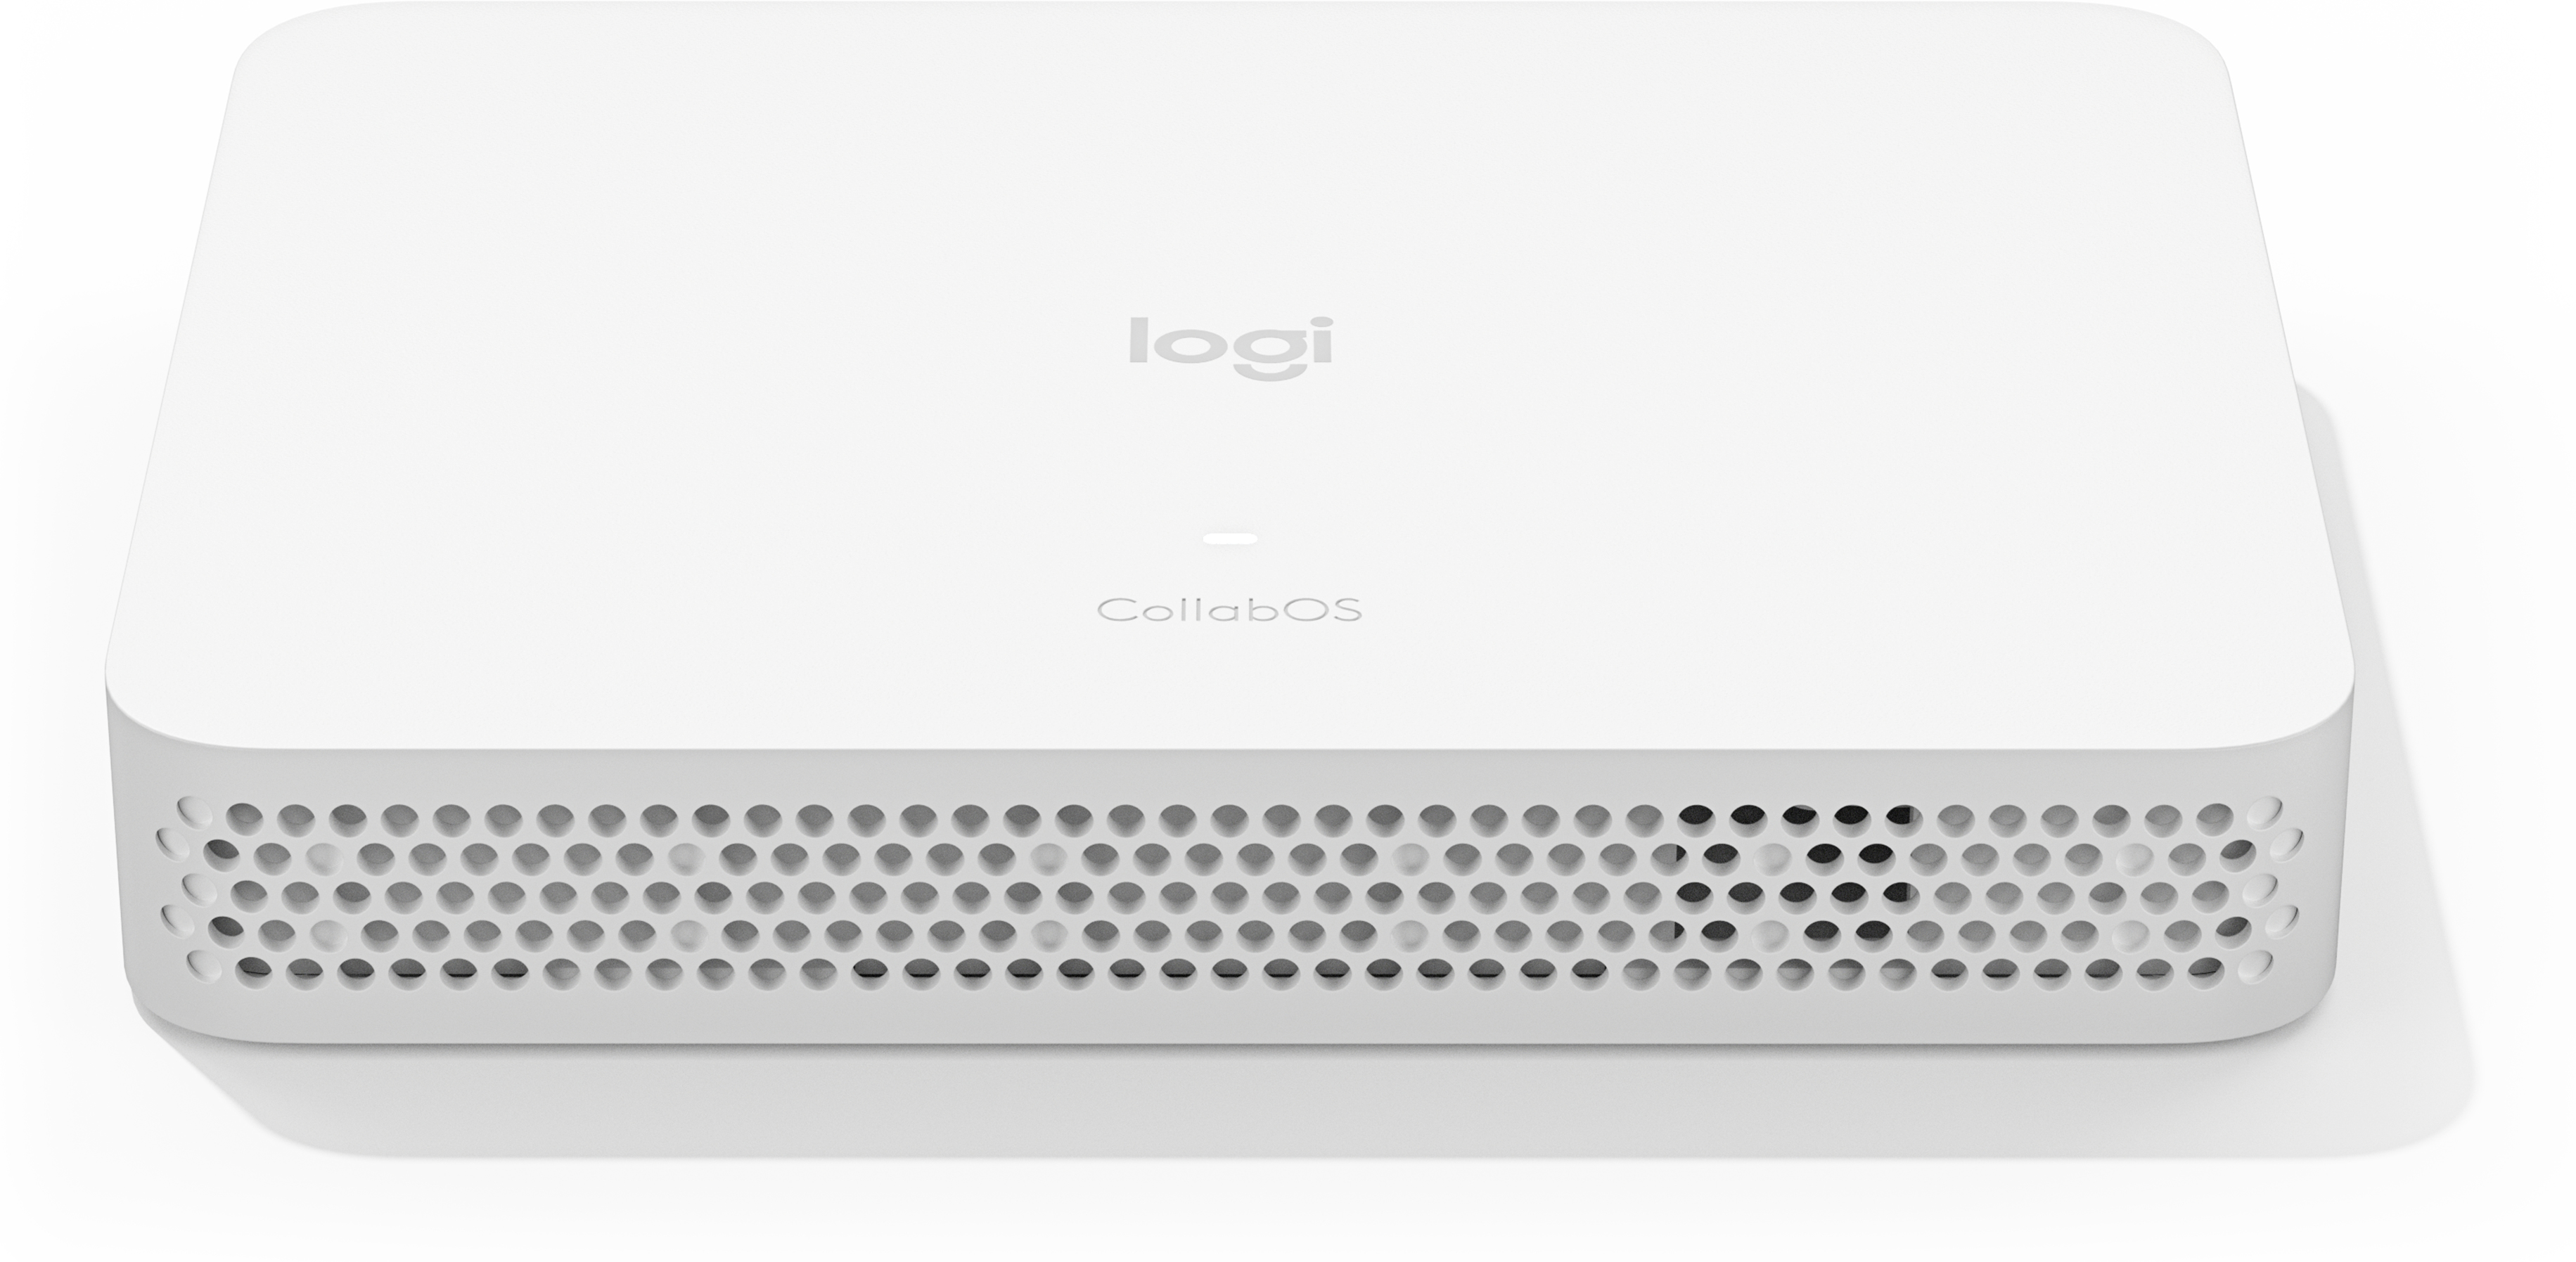 Logitech RoomMate + Tap IP système de vidéo conférence Ethernet/LAN